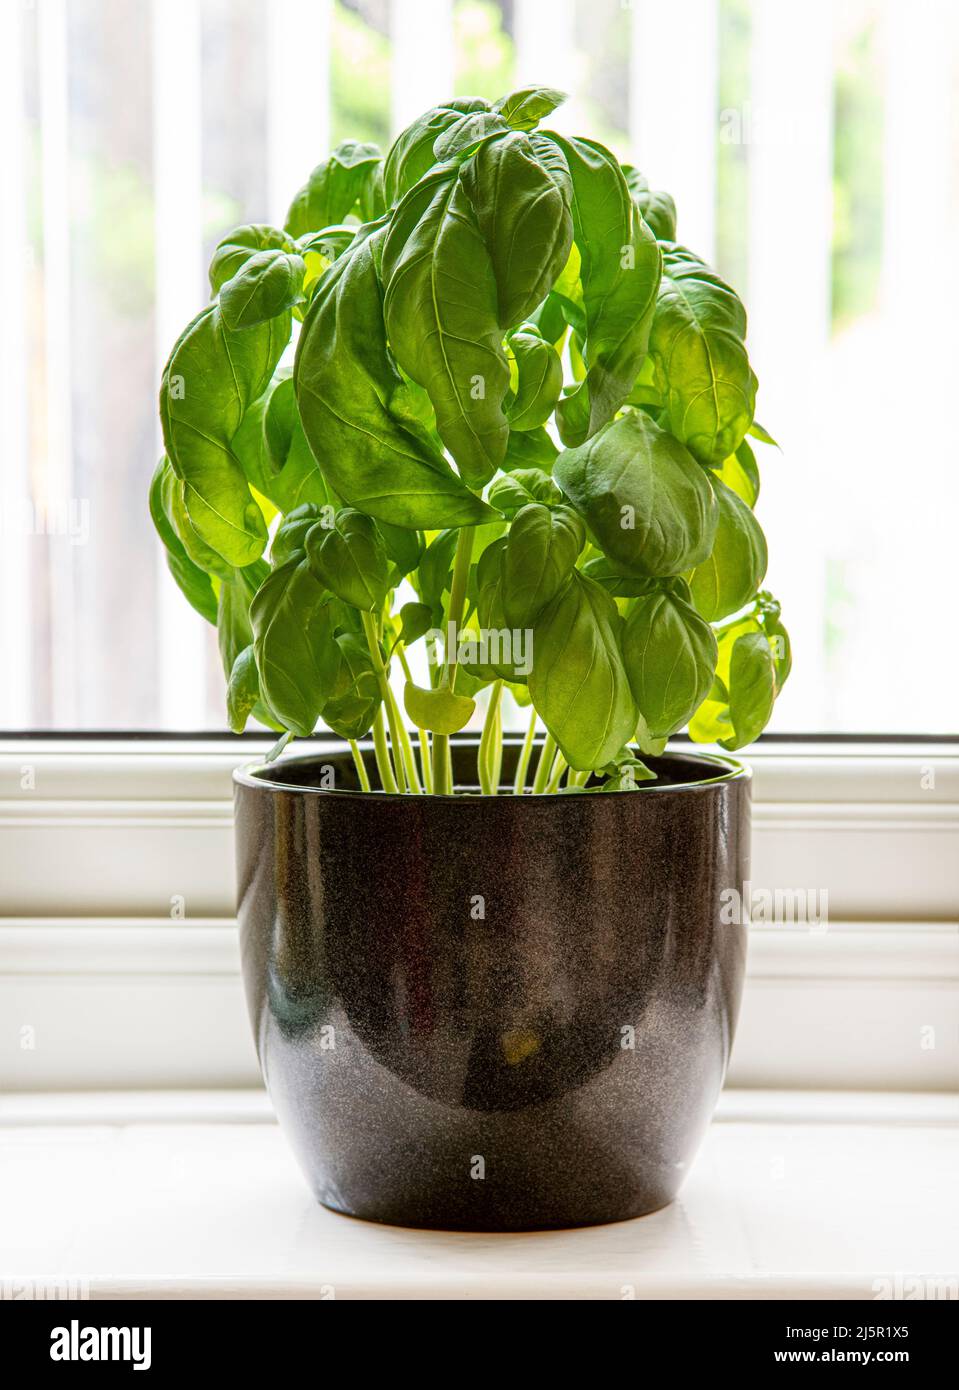 Planta de albahaca que crece en olla en borde de ventana Foto de stock